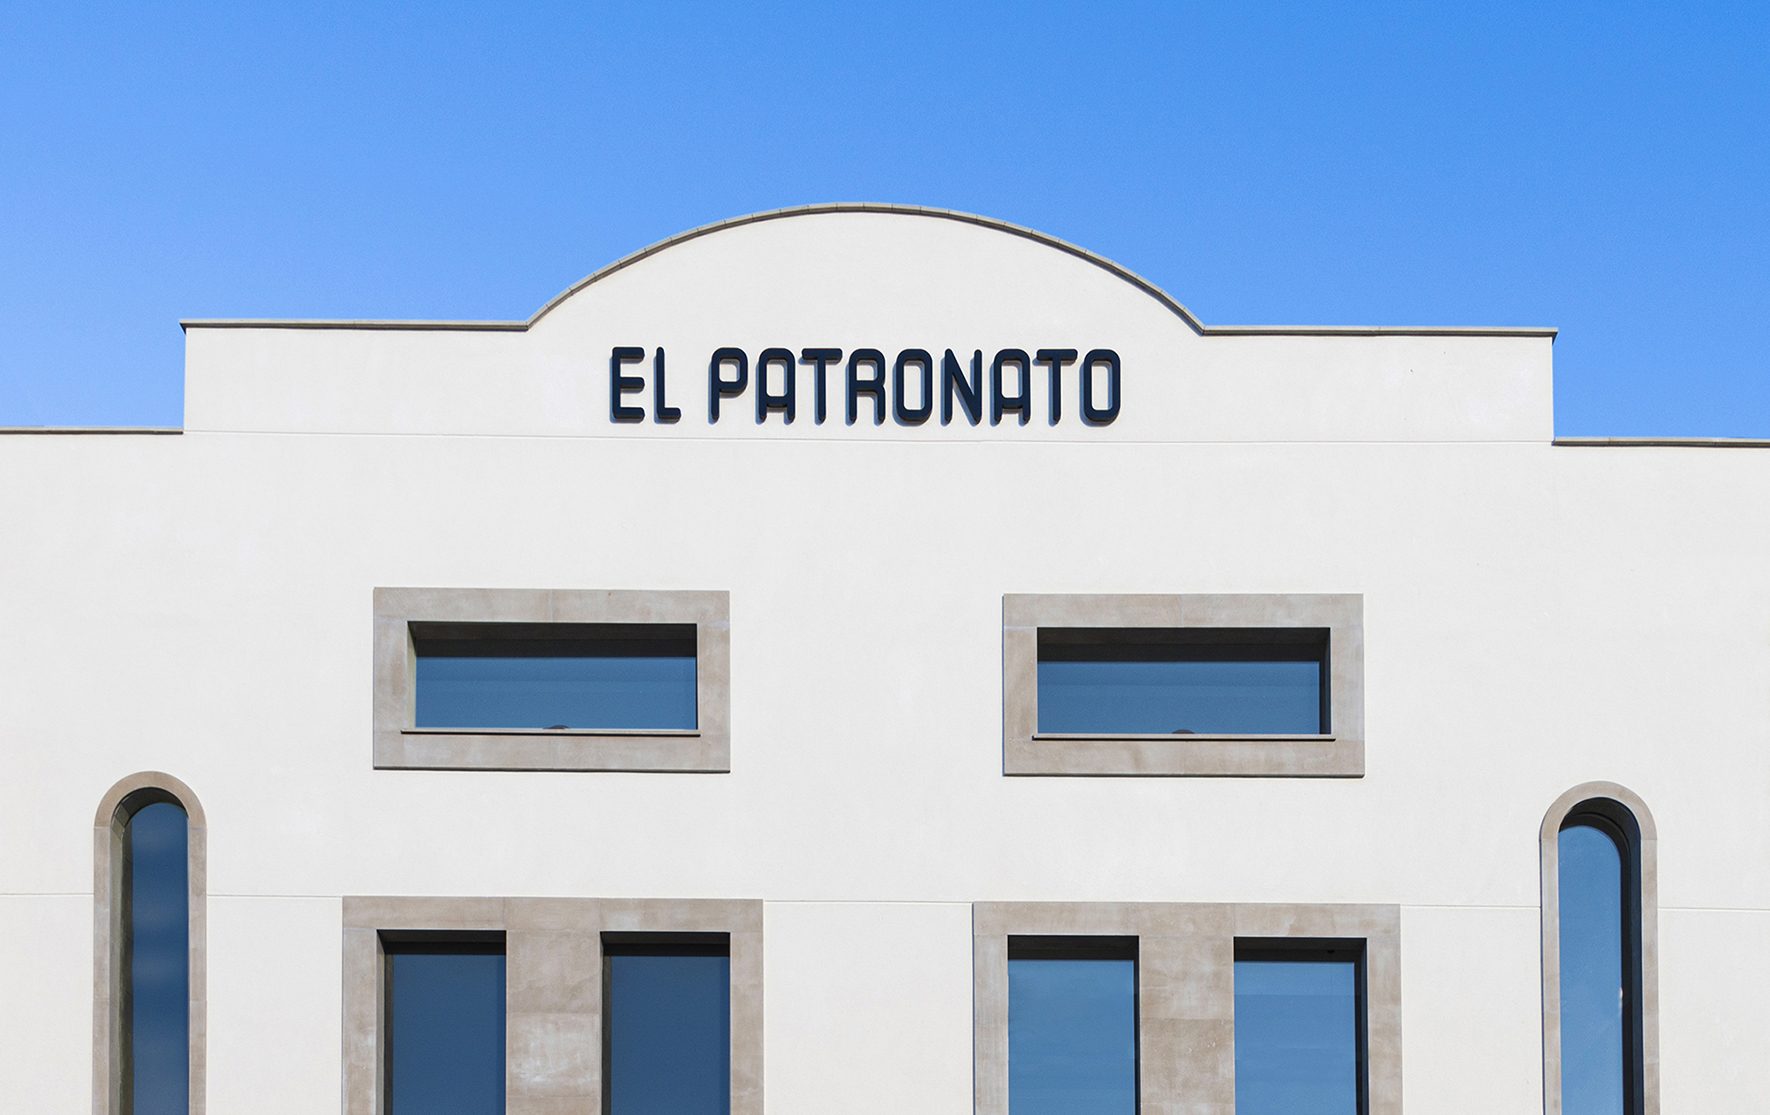 La Caja Rural de Villar inaugura el próximo lunes el edificio El Patronato